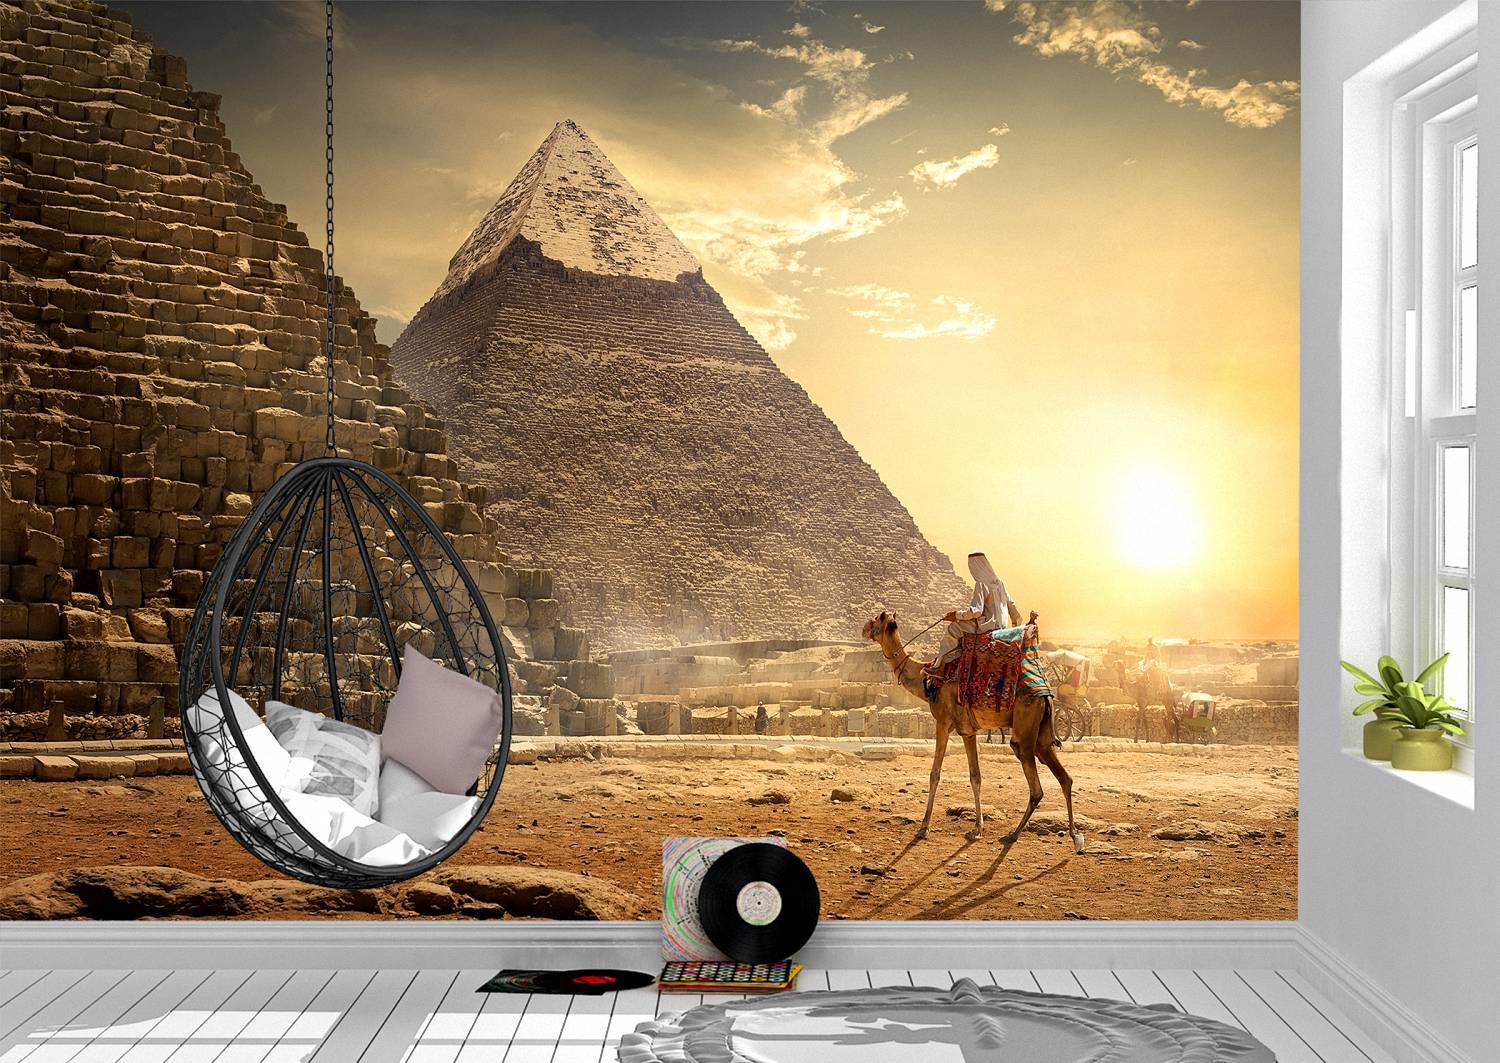 Pyramids & Egyptian Desert Wall Mural Photo Wallpaper UV Print Decal Art Décor